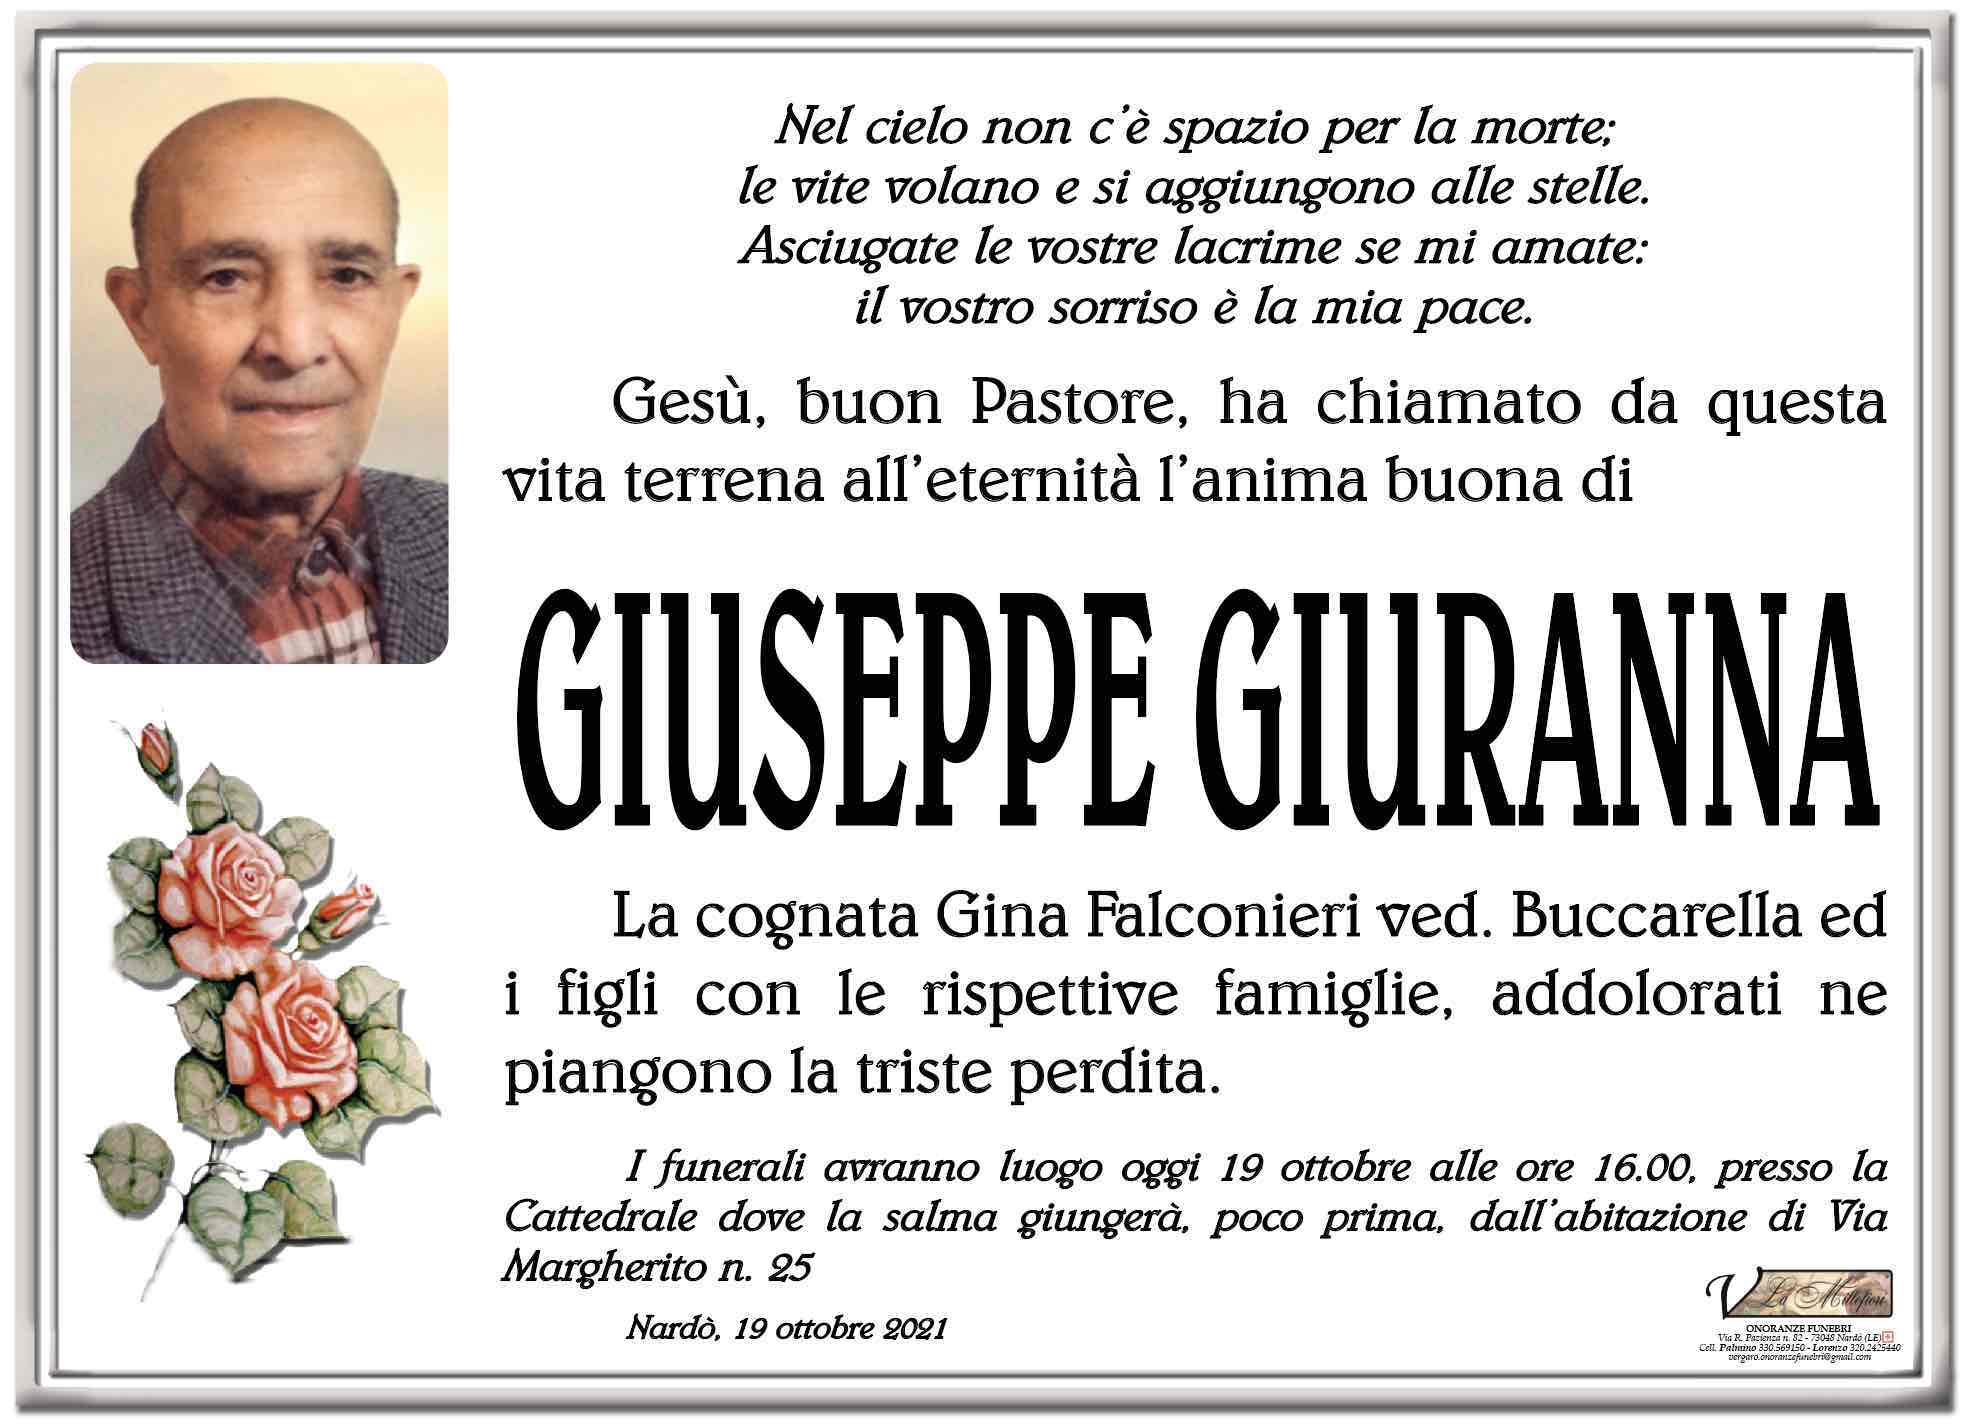 Giuseppe Giuranna